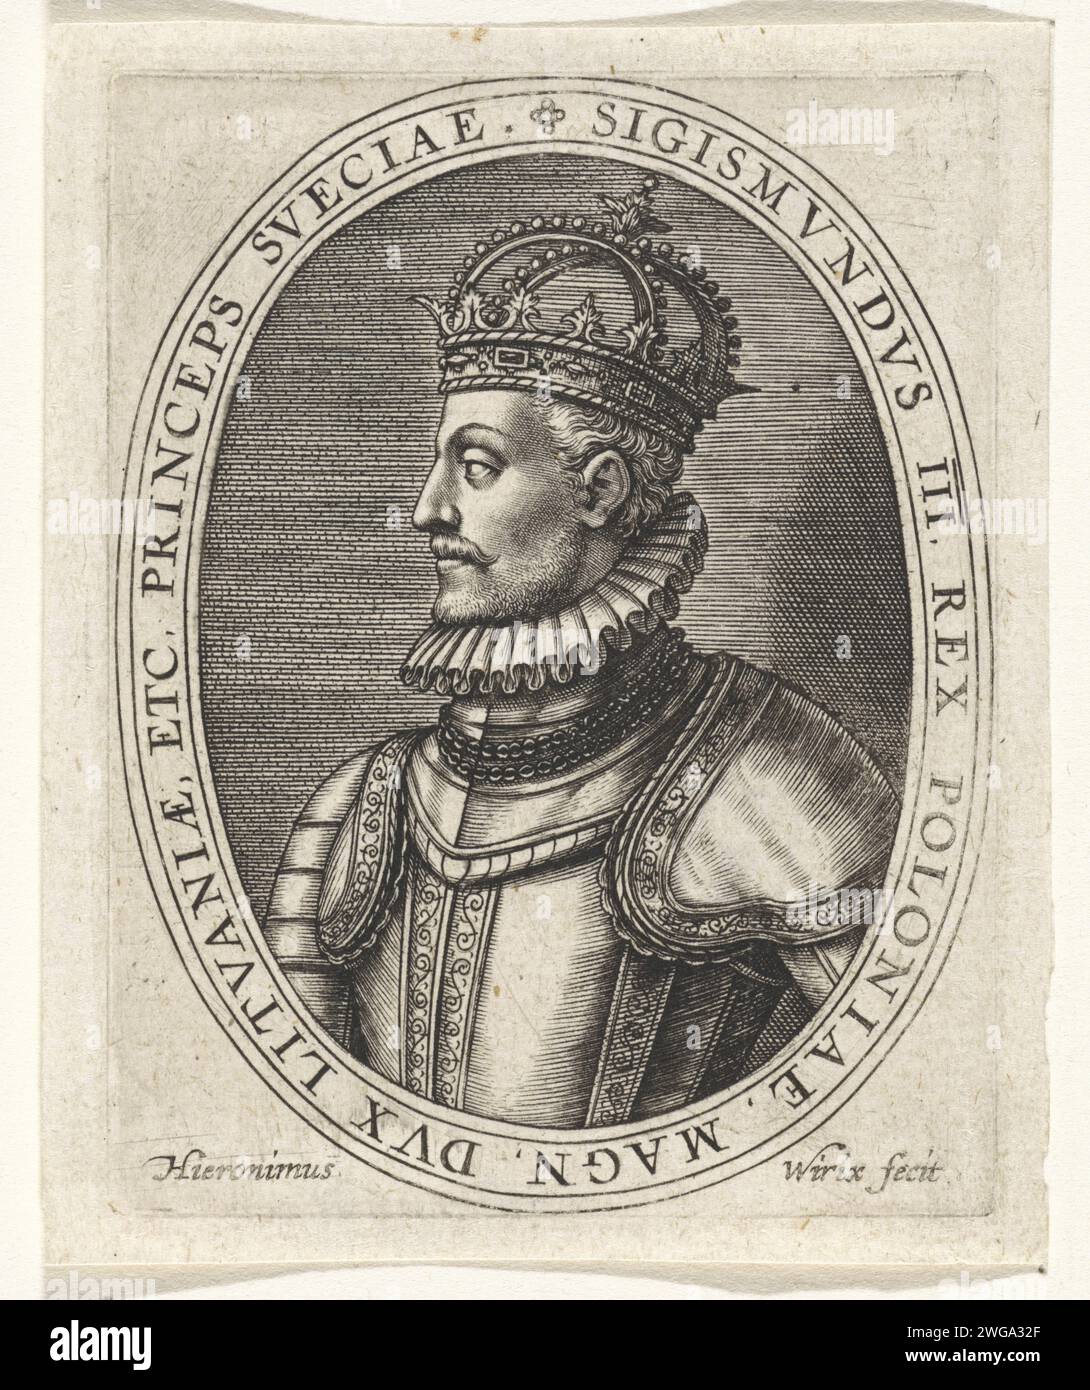 Porträt von Sigismund III., König von Polen und Schweden, Hieronymus Wierix, 1563 – vor 1619 Druck Er wurde gekrönt und trägt Rüstung. Antwerpener Papierstich-Rüstung. Krone (Symbol der Souveränität) Stockfoto